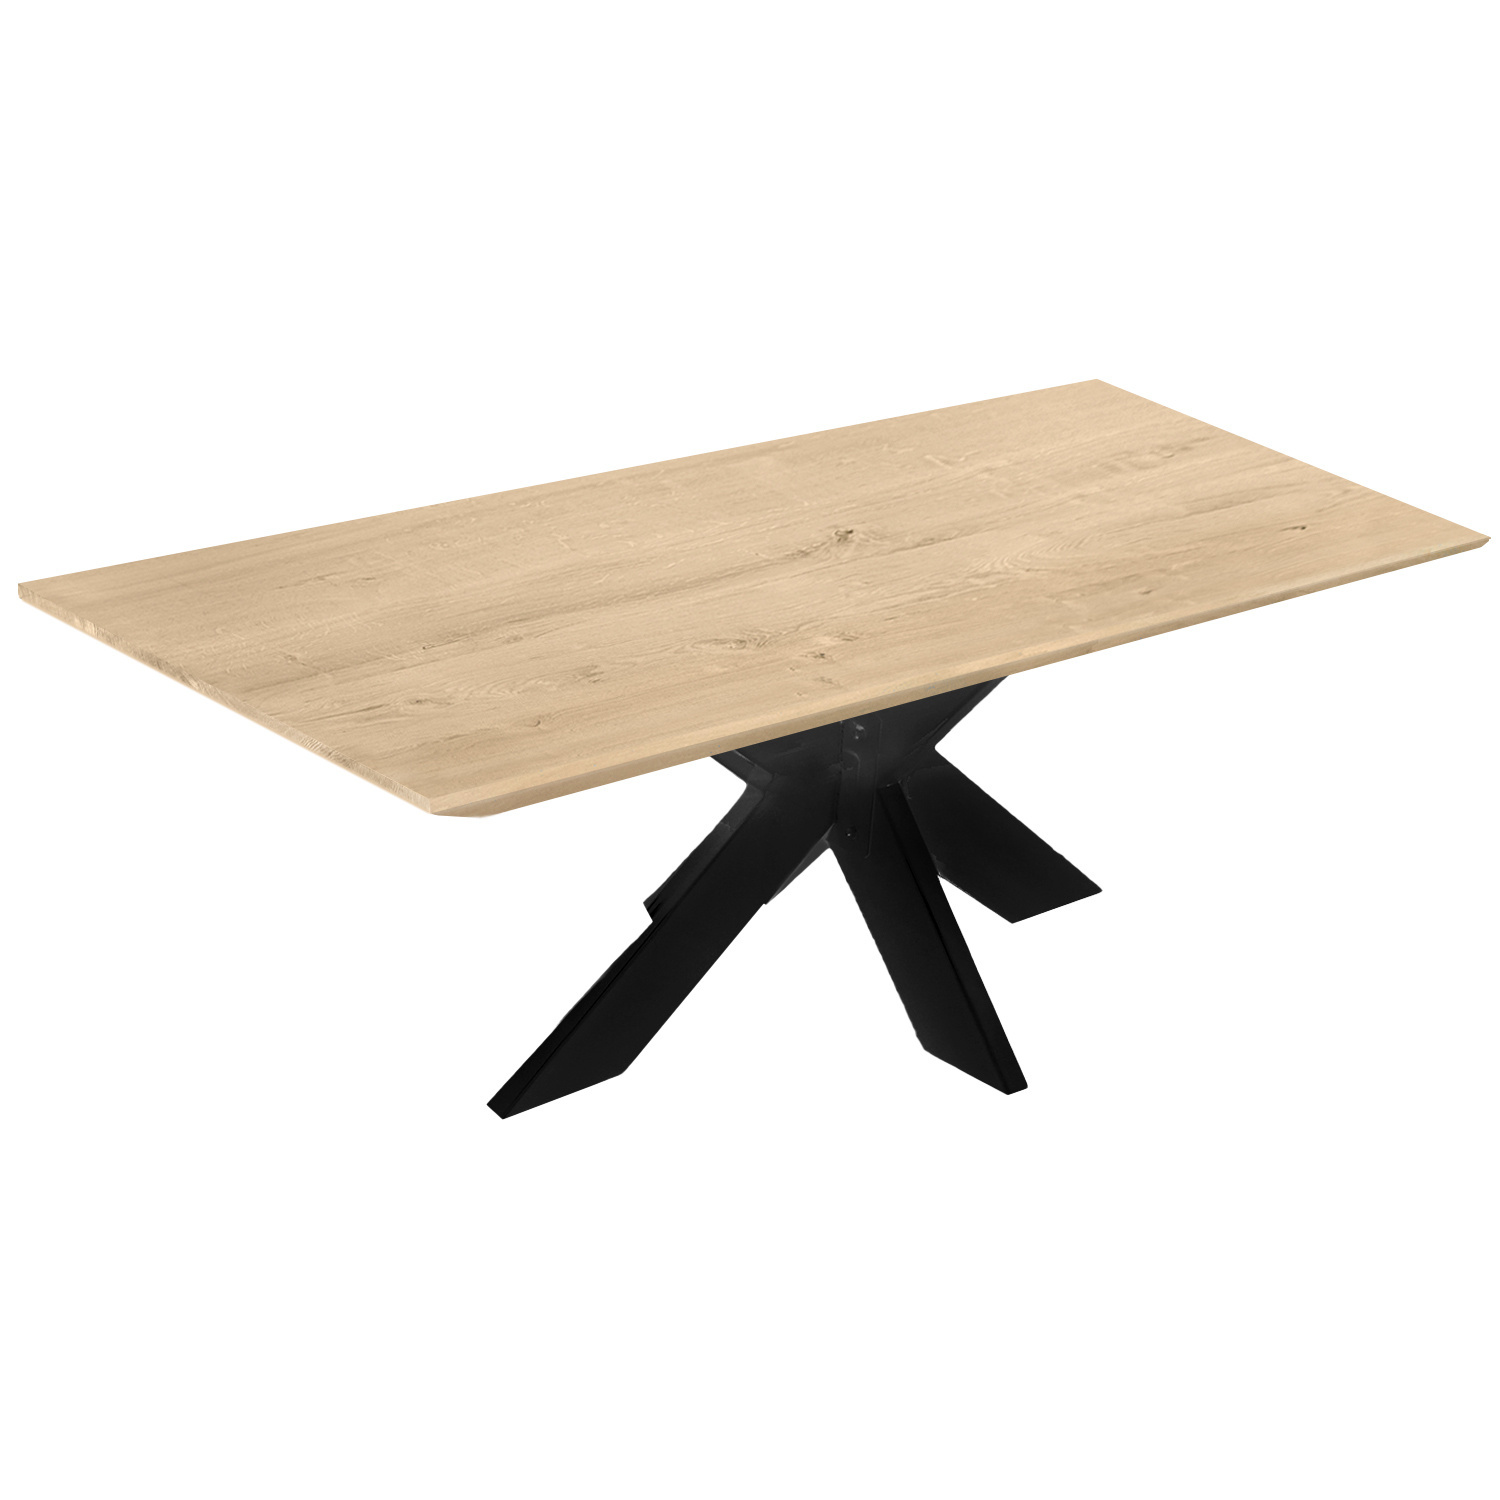  Eiken tafelblad met verjongde rand - 2,5 cm dik (1-laag) - Diverse afmetingen - extra rustiek Europees eikenhout - met extra brede lamellen (circa 14-20 cm) - verlijmd kd 8-12%